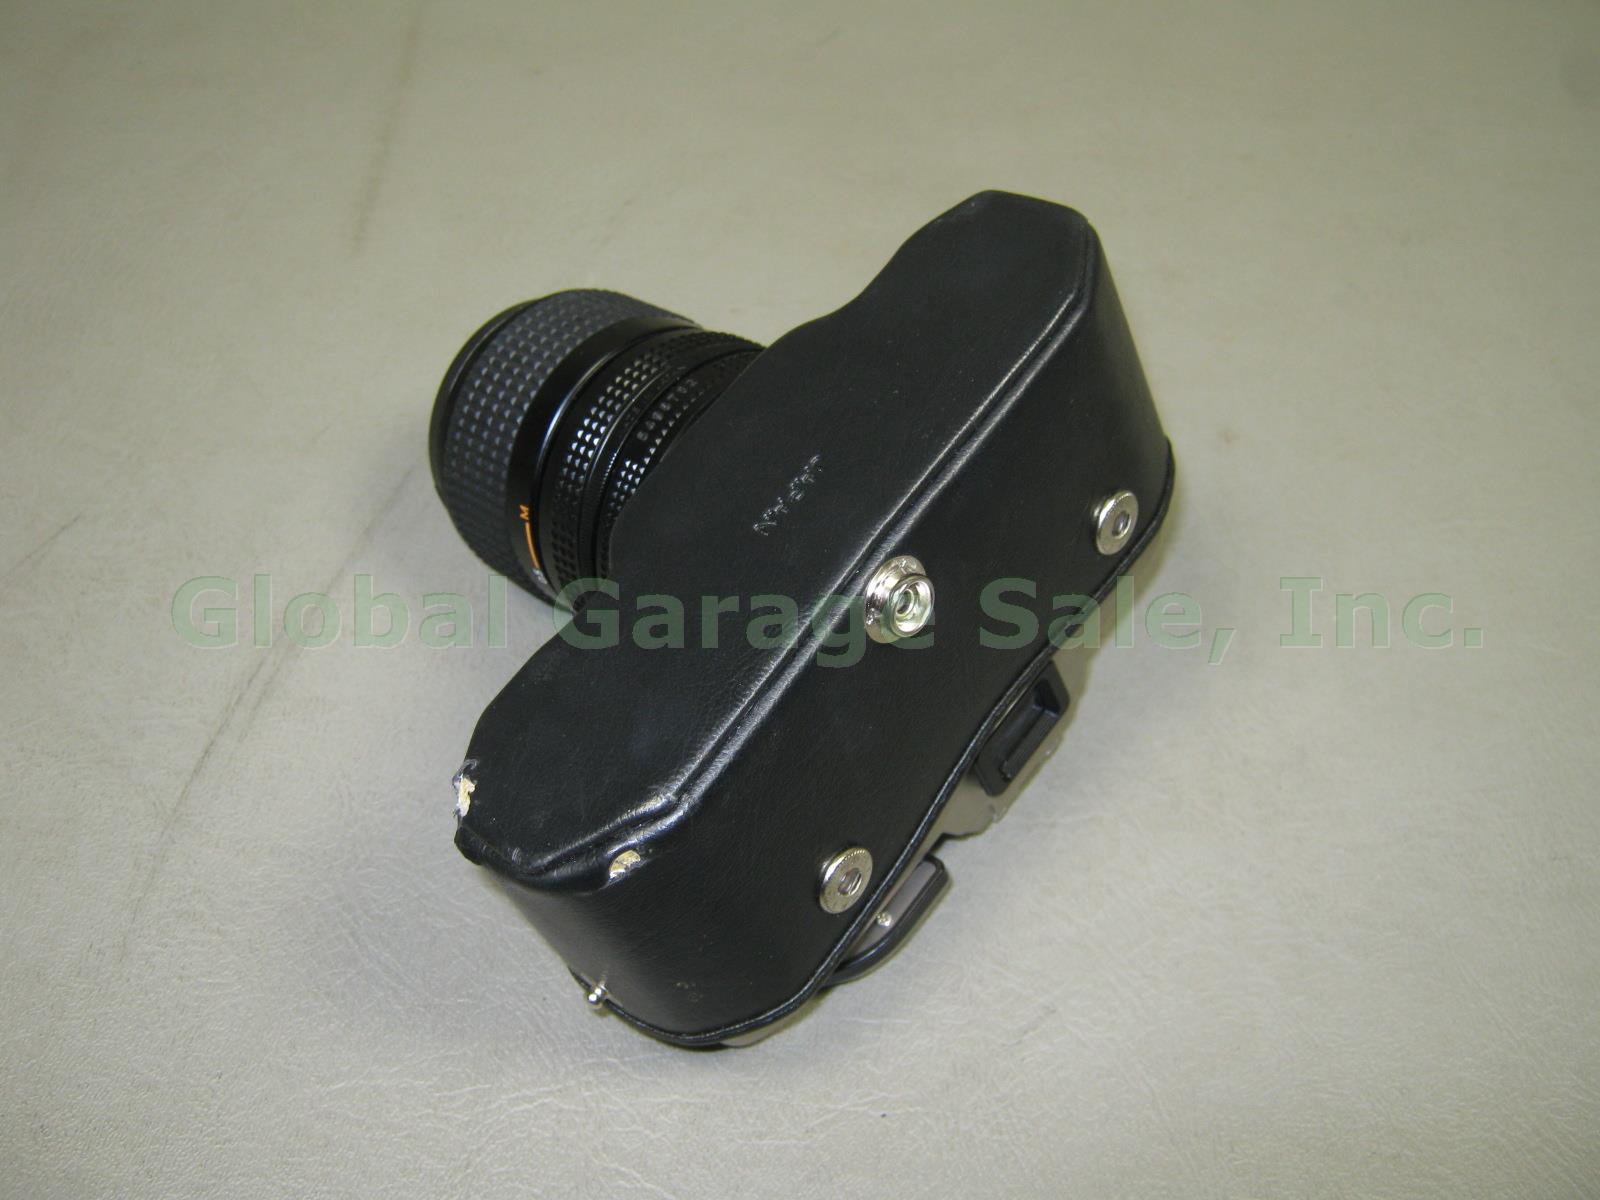 Nikon FM10 35mm SLR Film Camera Zoom Nikkor 35-70mm 1:3.5~4.8 Lens Case Bundle 8